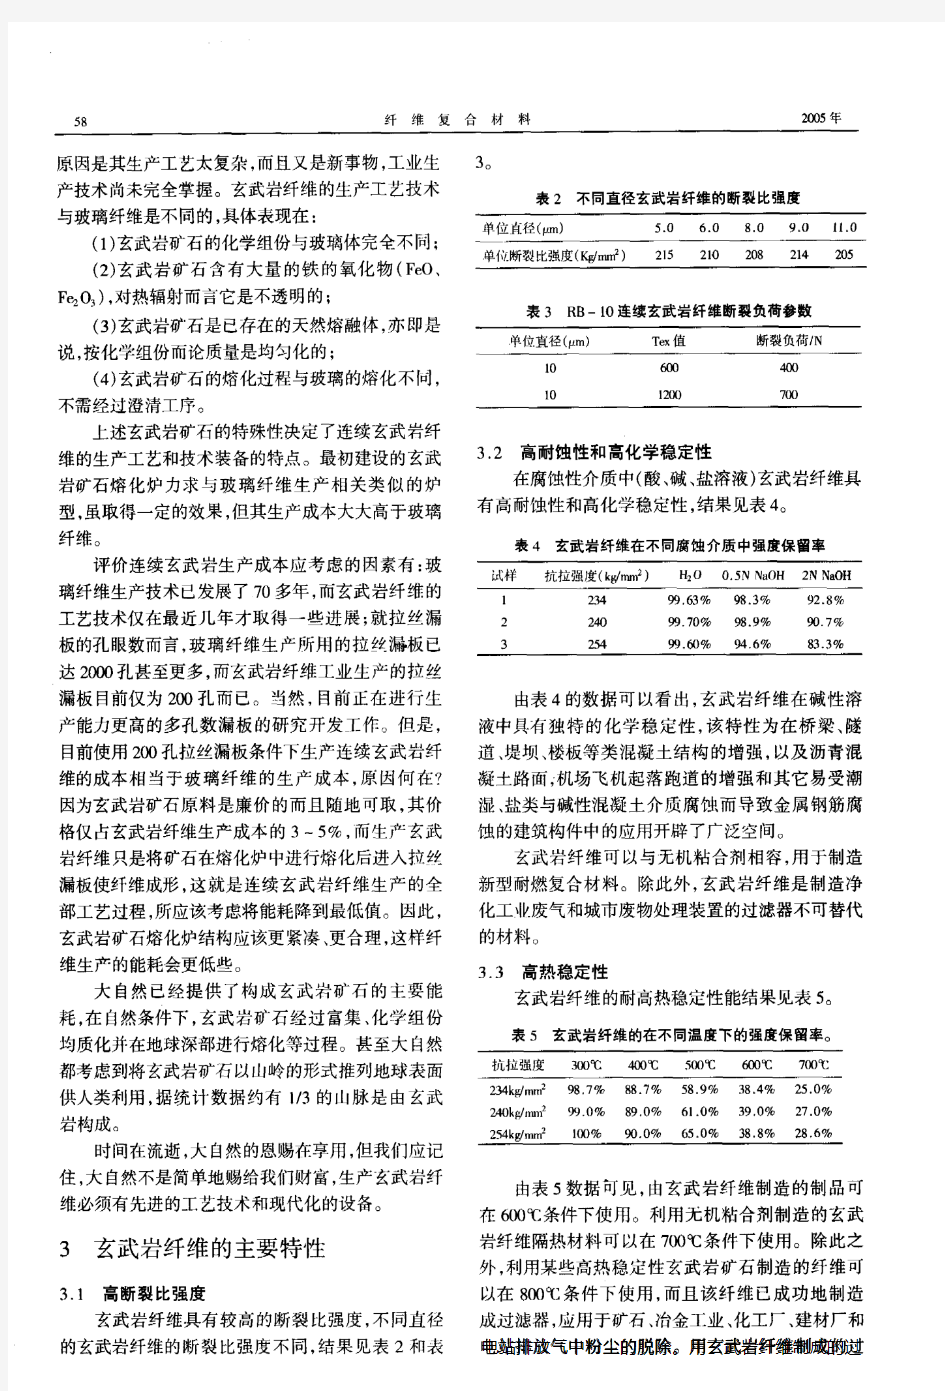 玄武岩纤维的特性及其在中国的应用前景